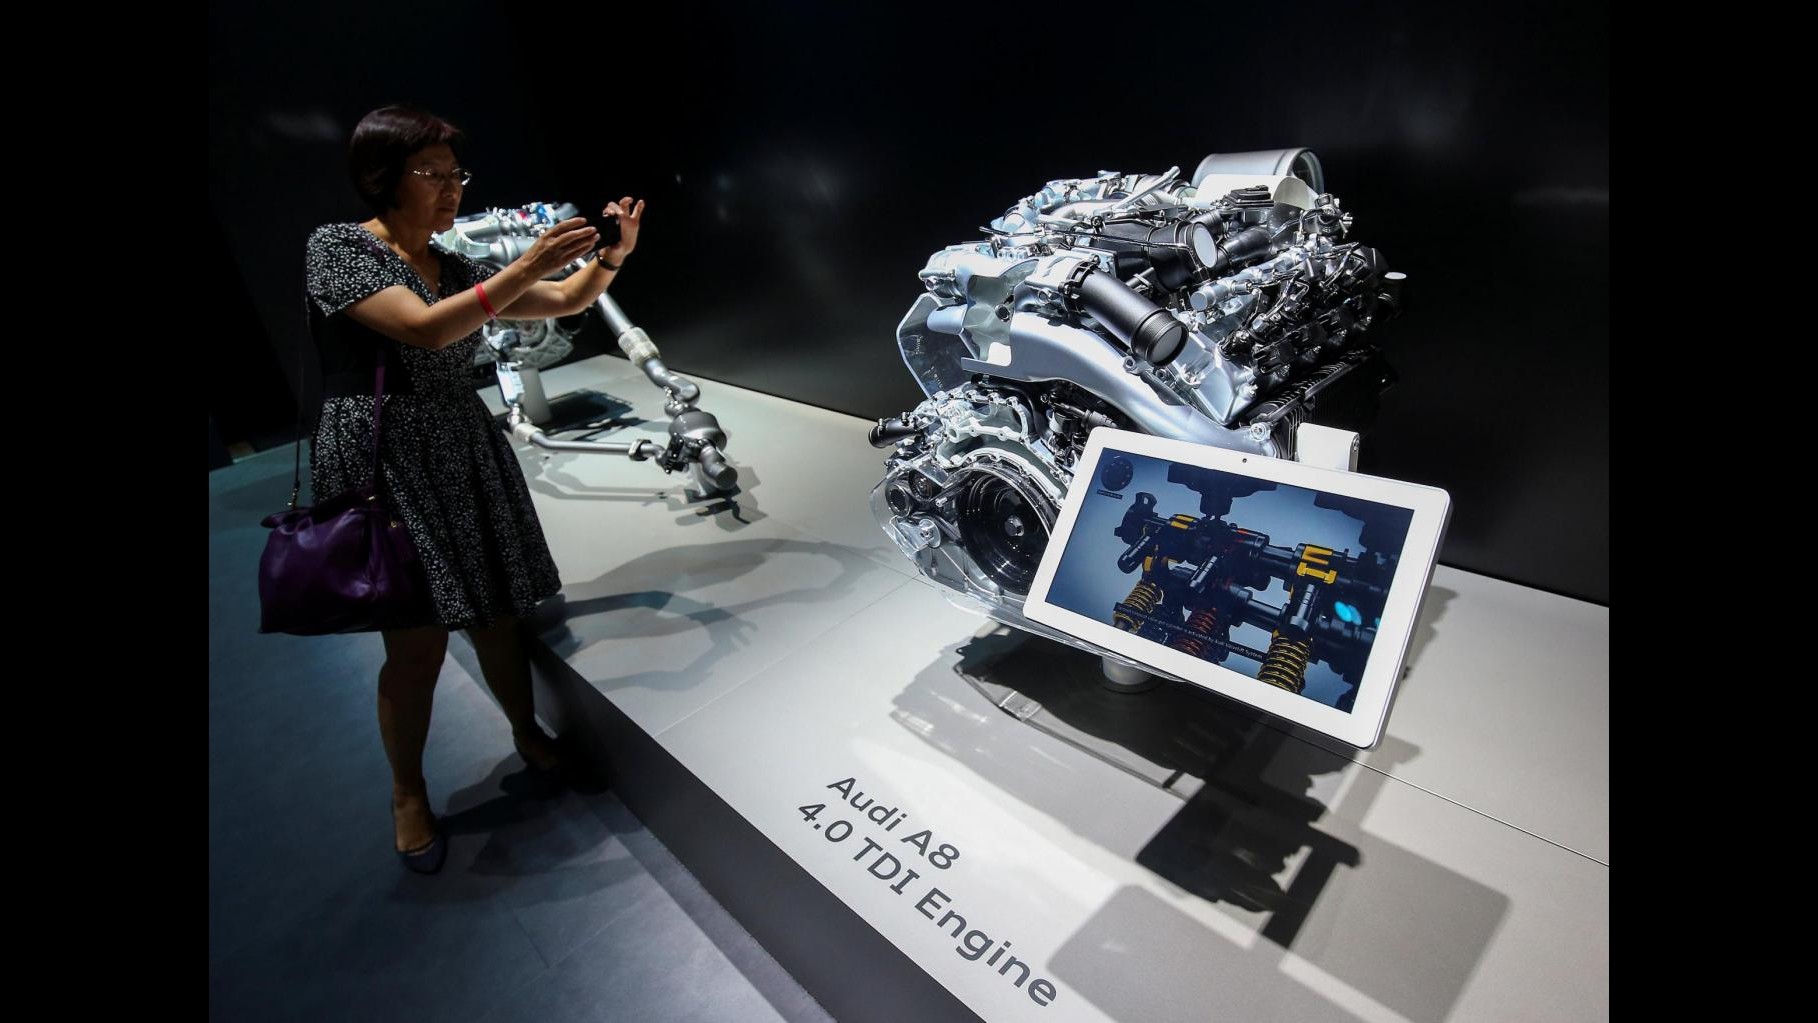 Eleganza e guida autonoma: Audi presenta a Barcellona la nuova A8